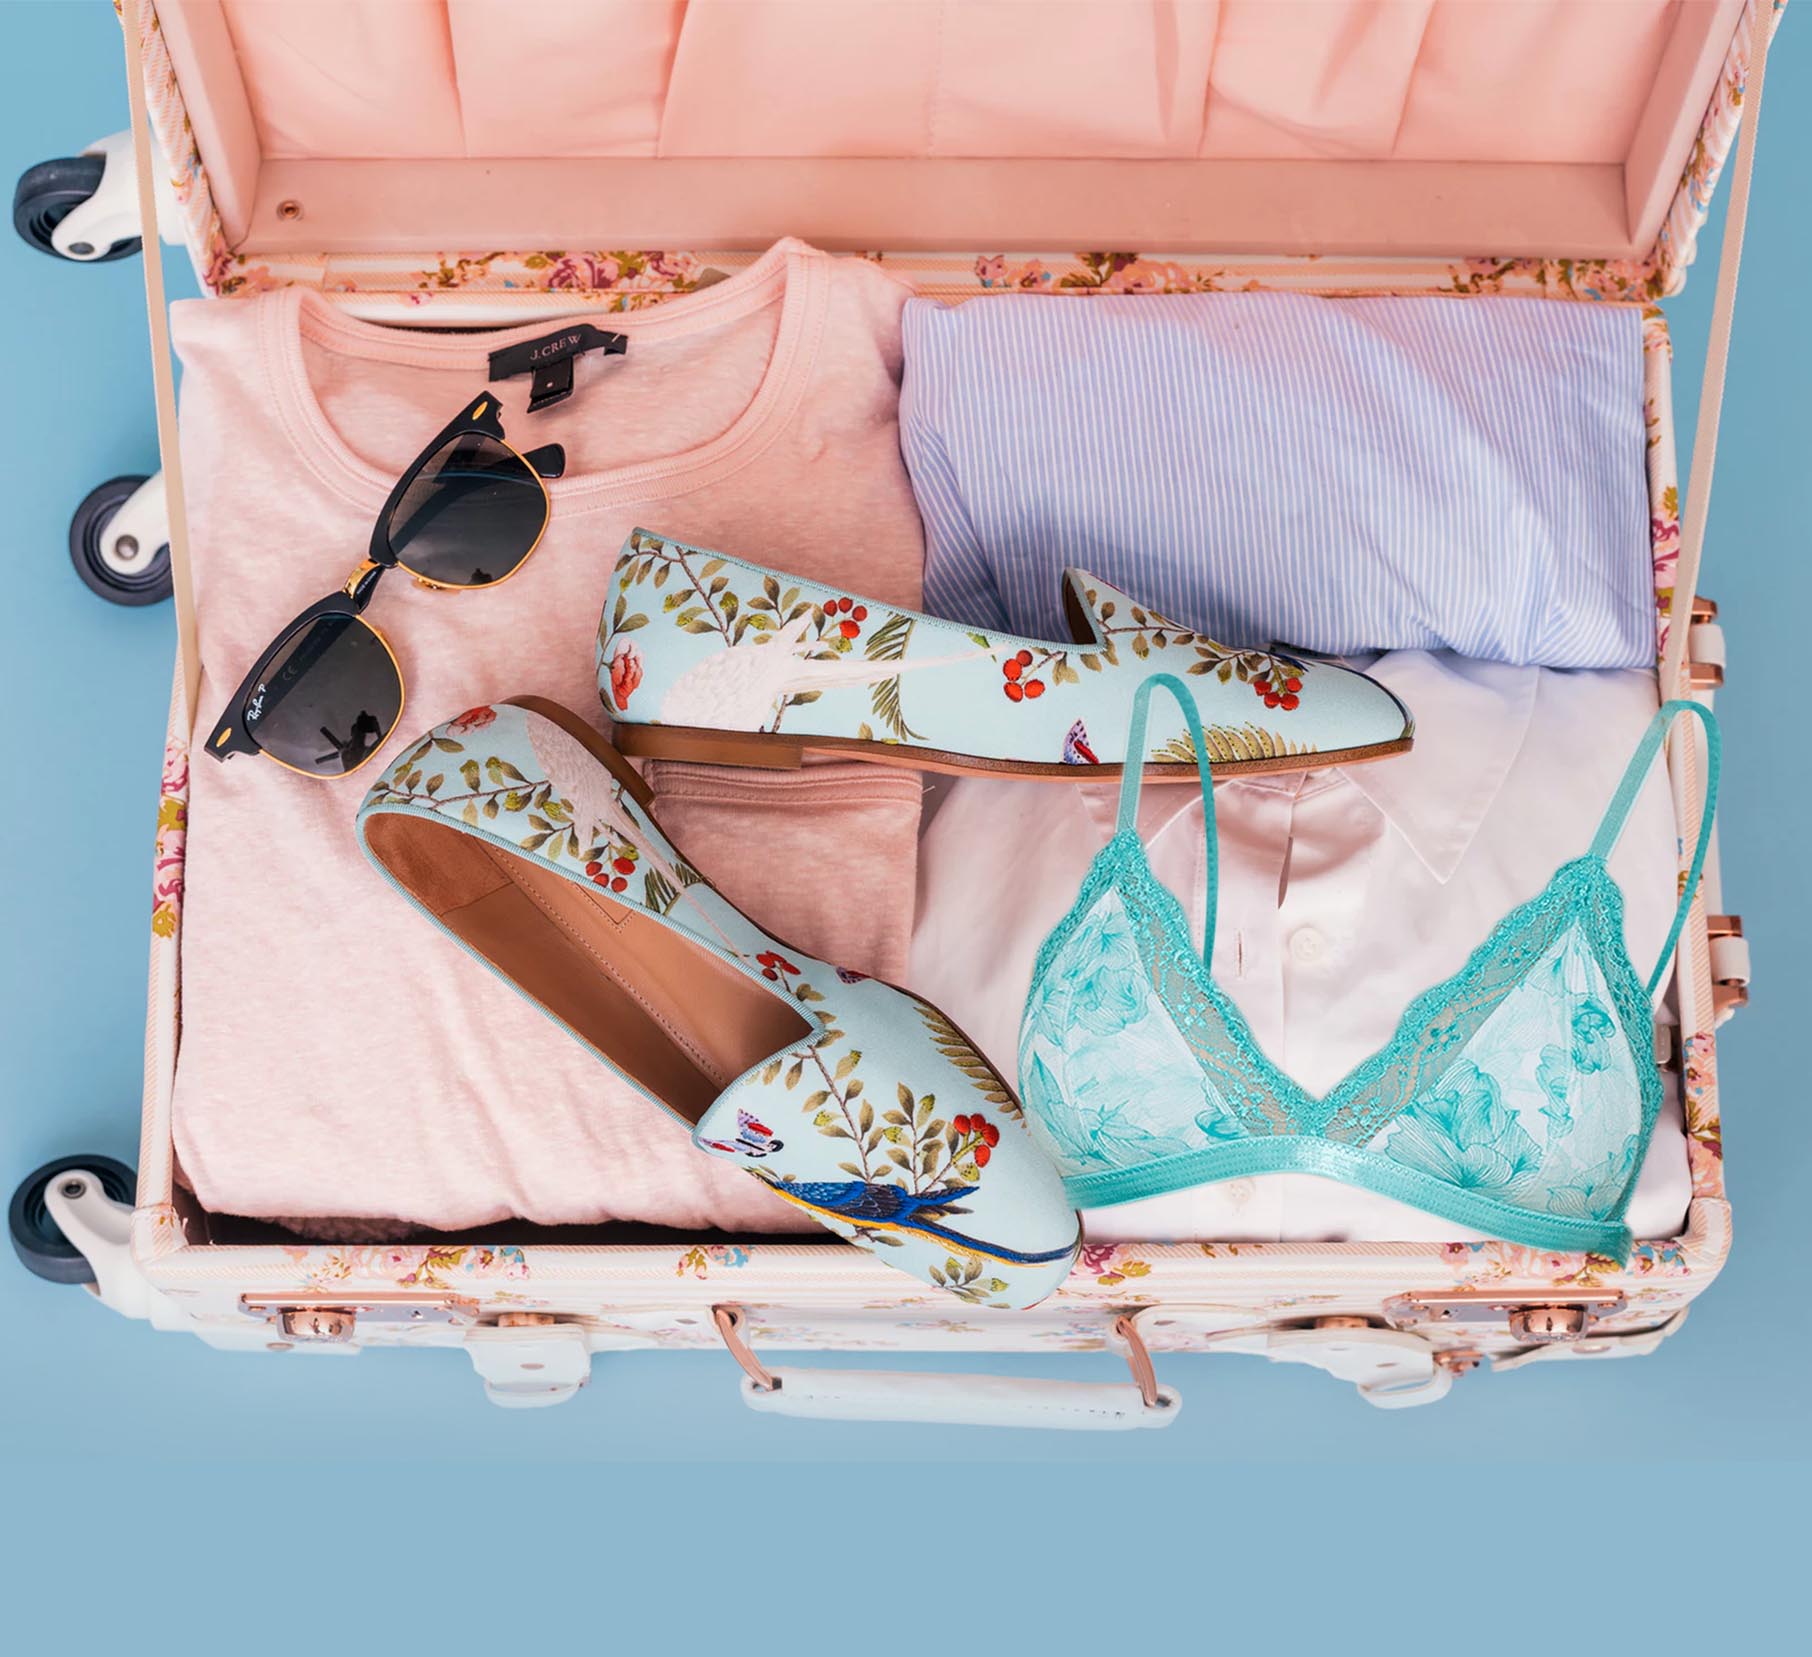 Lingerie Packing Tips for the Travelling Woman – Inner Sense